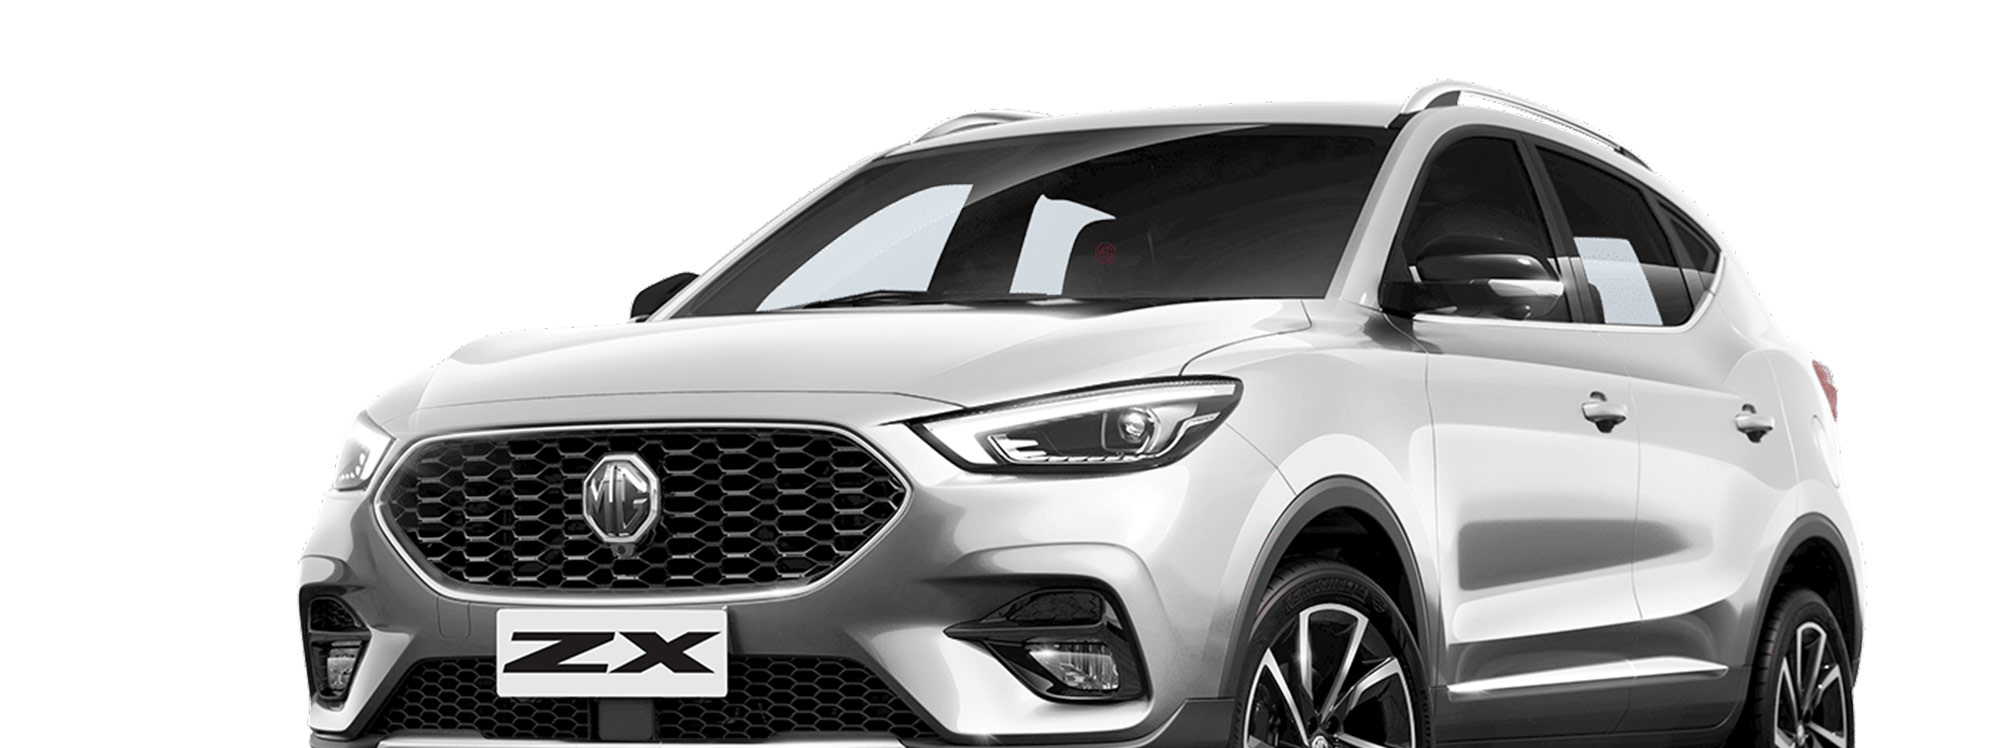 “MG ZX”, un nuevo SUV llega al mercado ecuatoriano